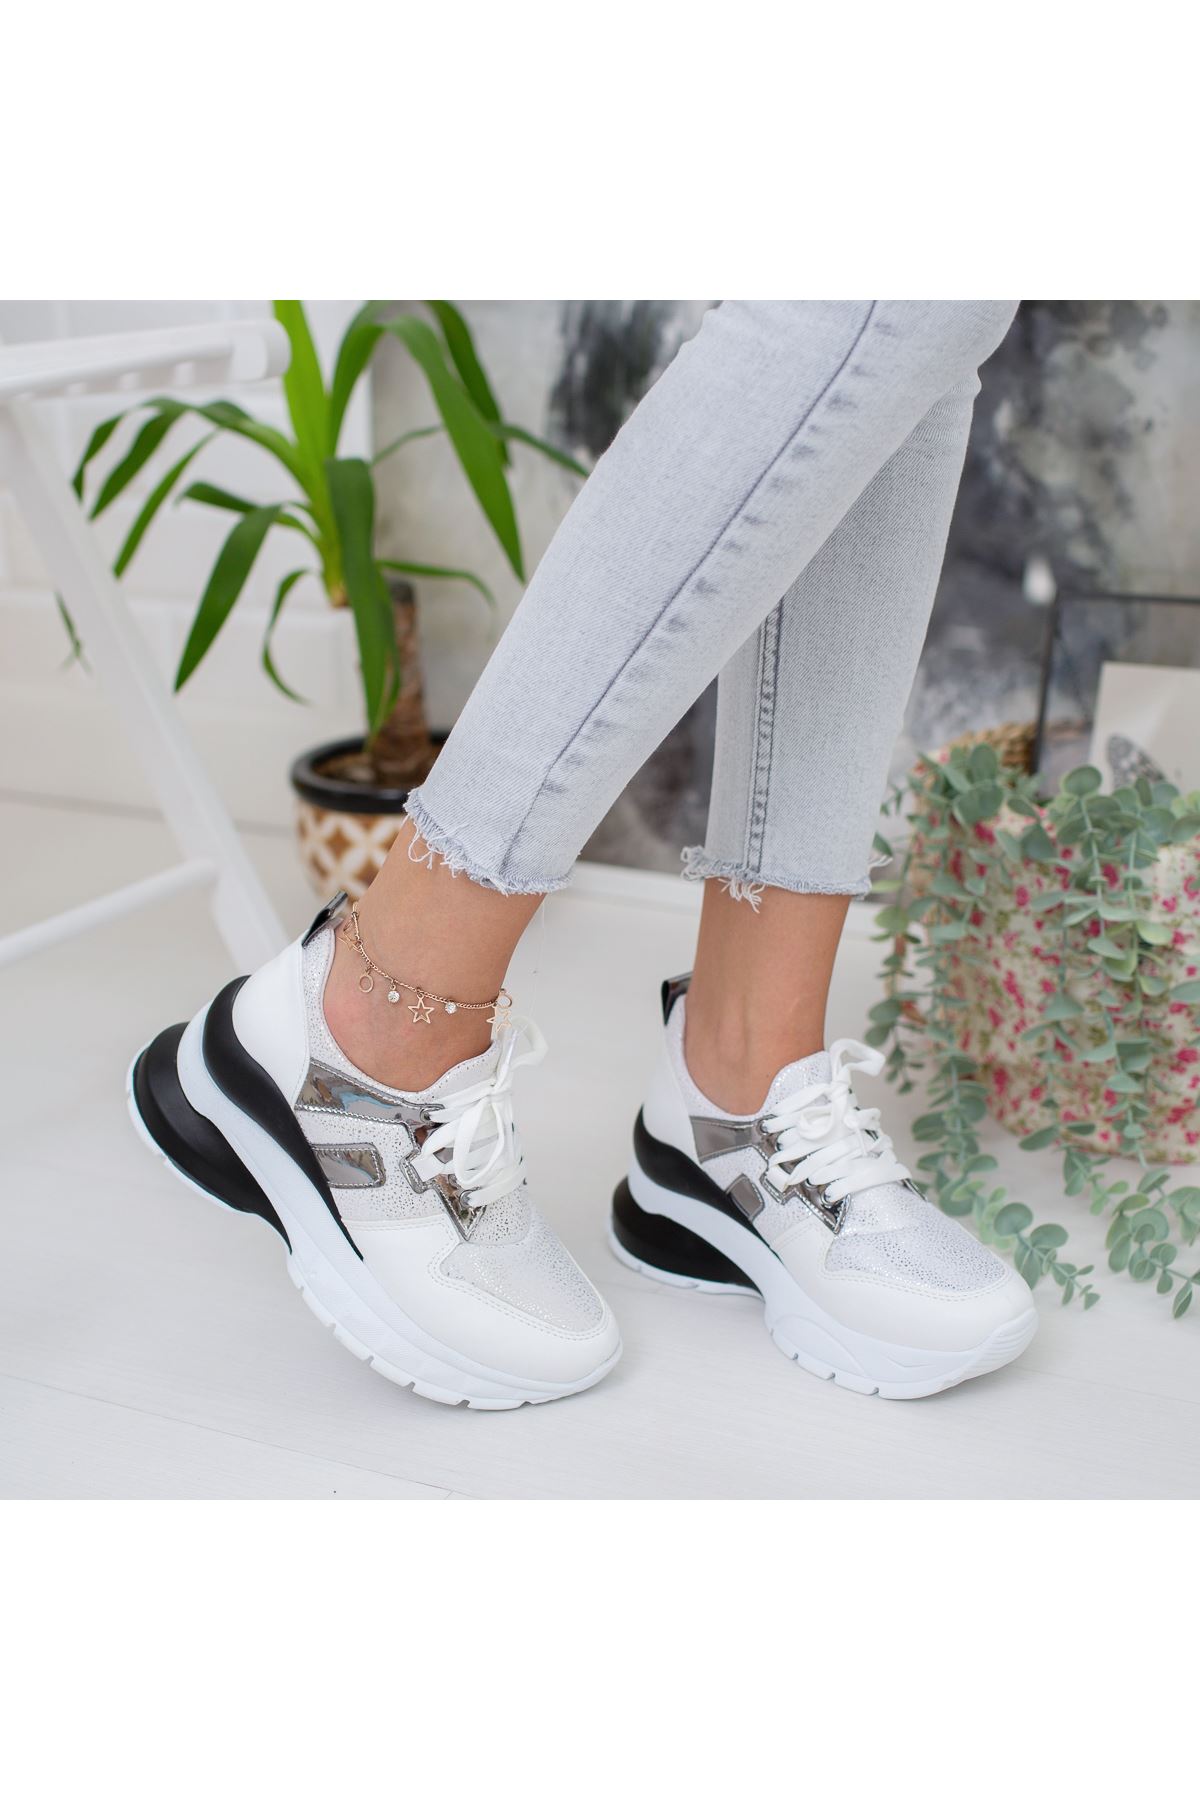 Dorsimo Beyaz Siyah Hologramlı Bayan Spor Ayakkabı